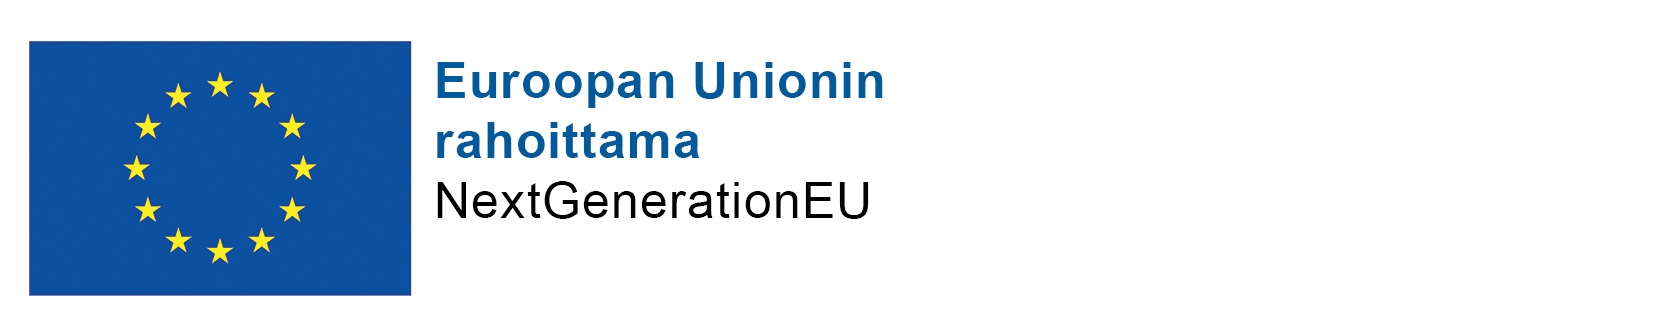 Euroopan Unionin rahoittama, NextGenerationEU.n logo